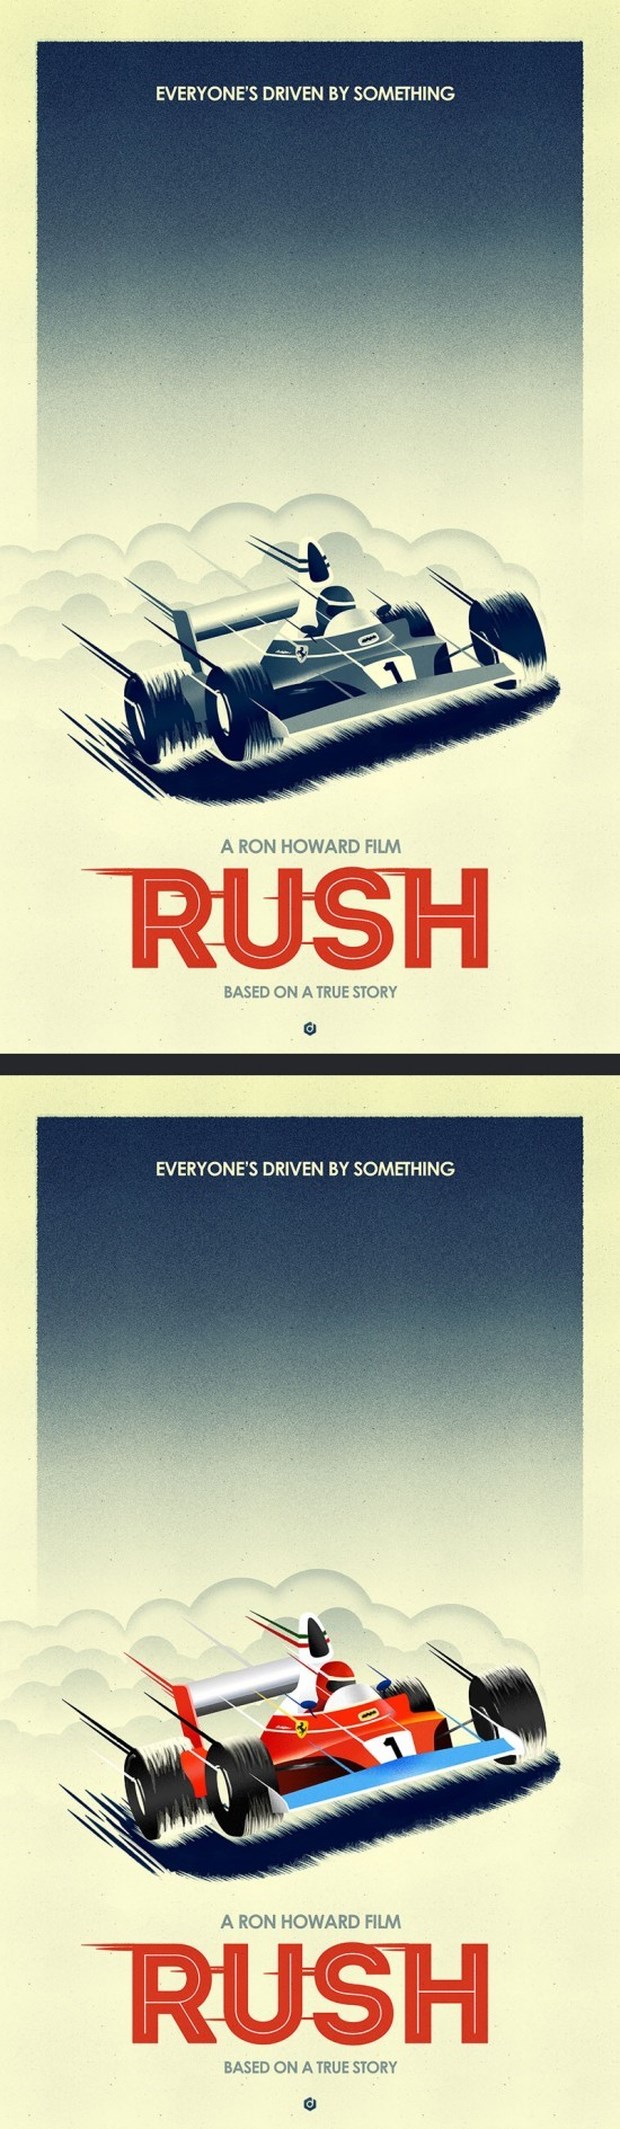 Alternative-Movie-Posters